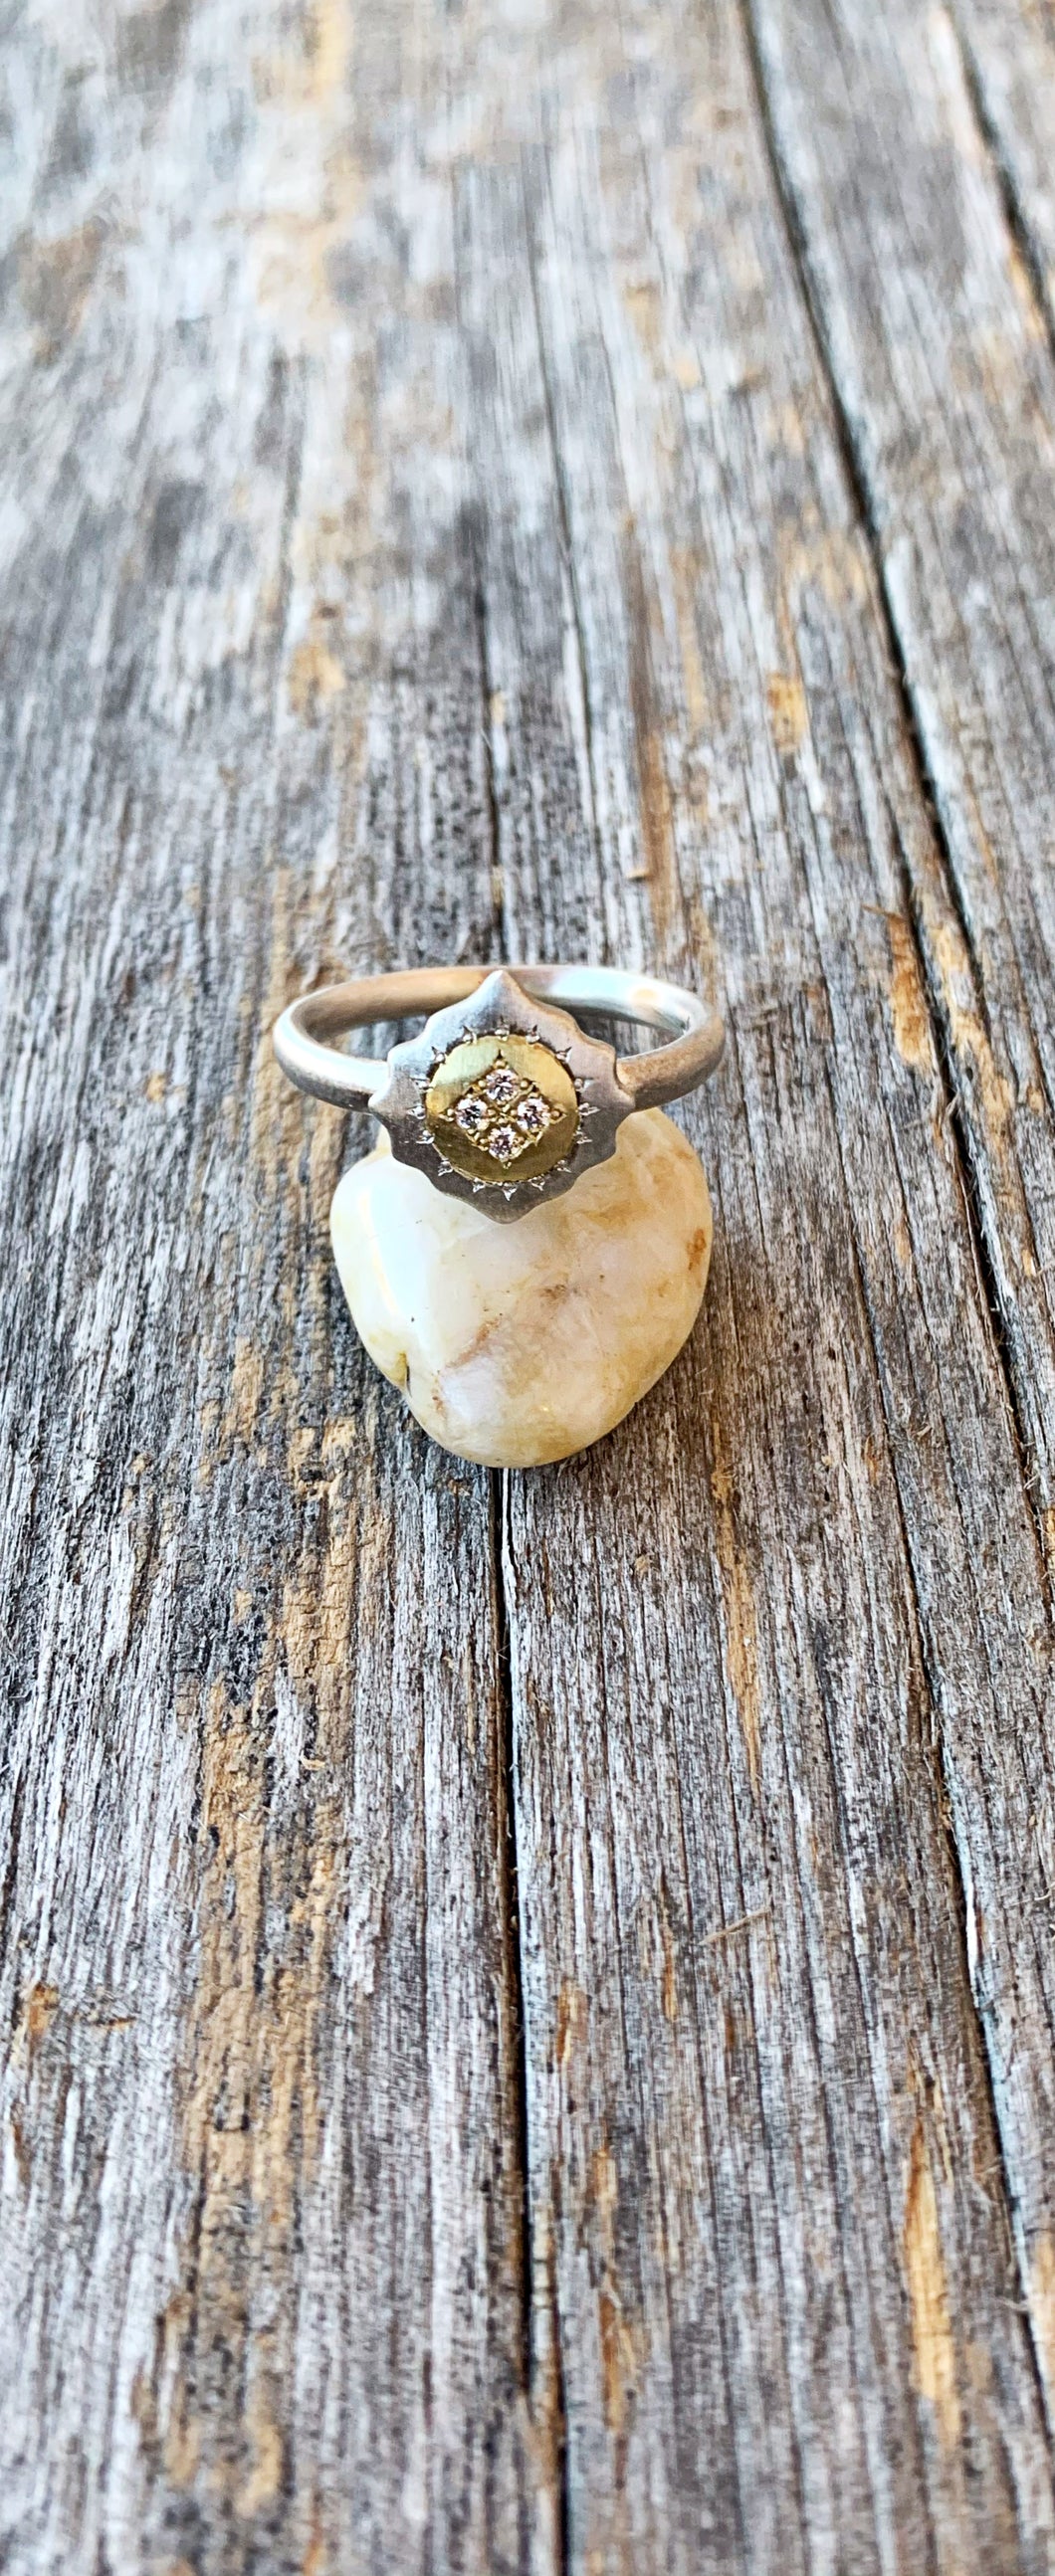 Two Tone Diamond Ring